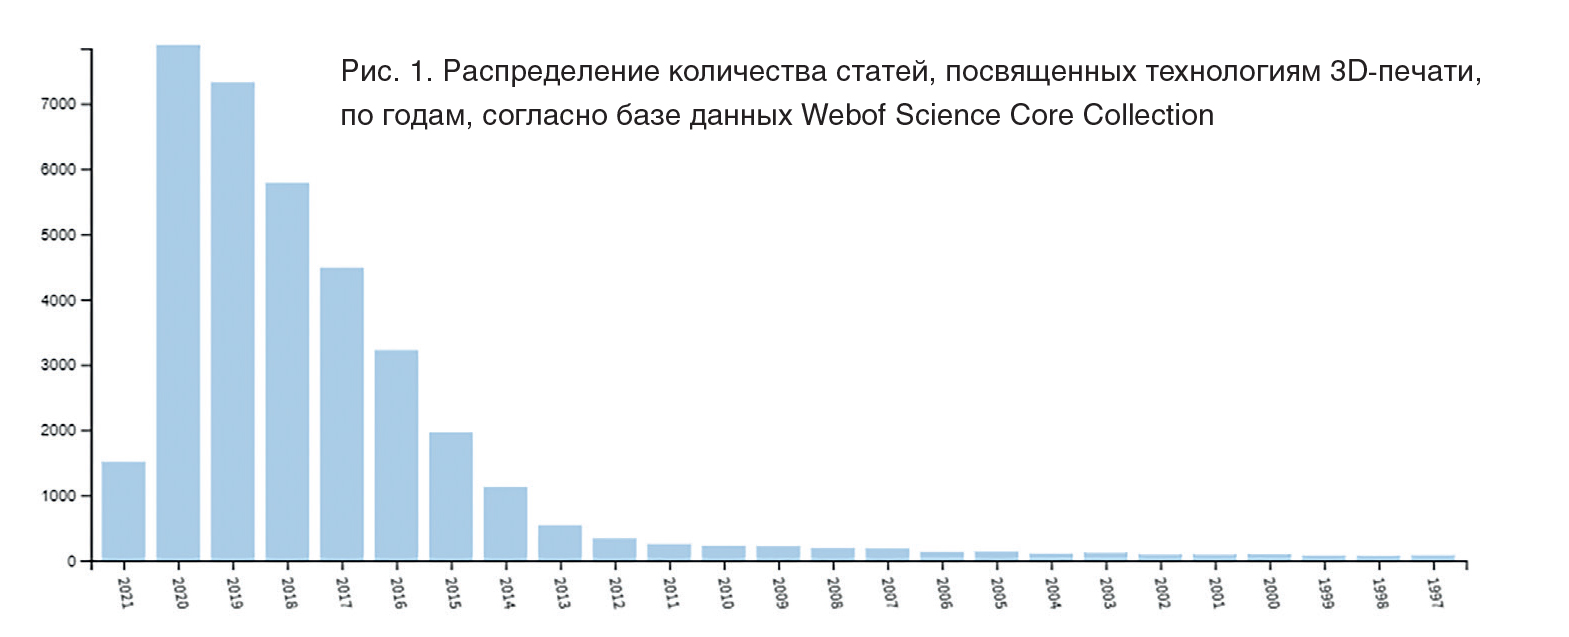 Рис. 1. Распределение количества статей, посвященных технологиям 3D-печати, по годам, согласно базе данных Webof Science Core Collection